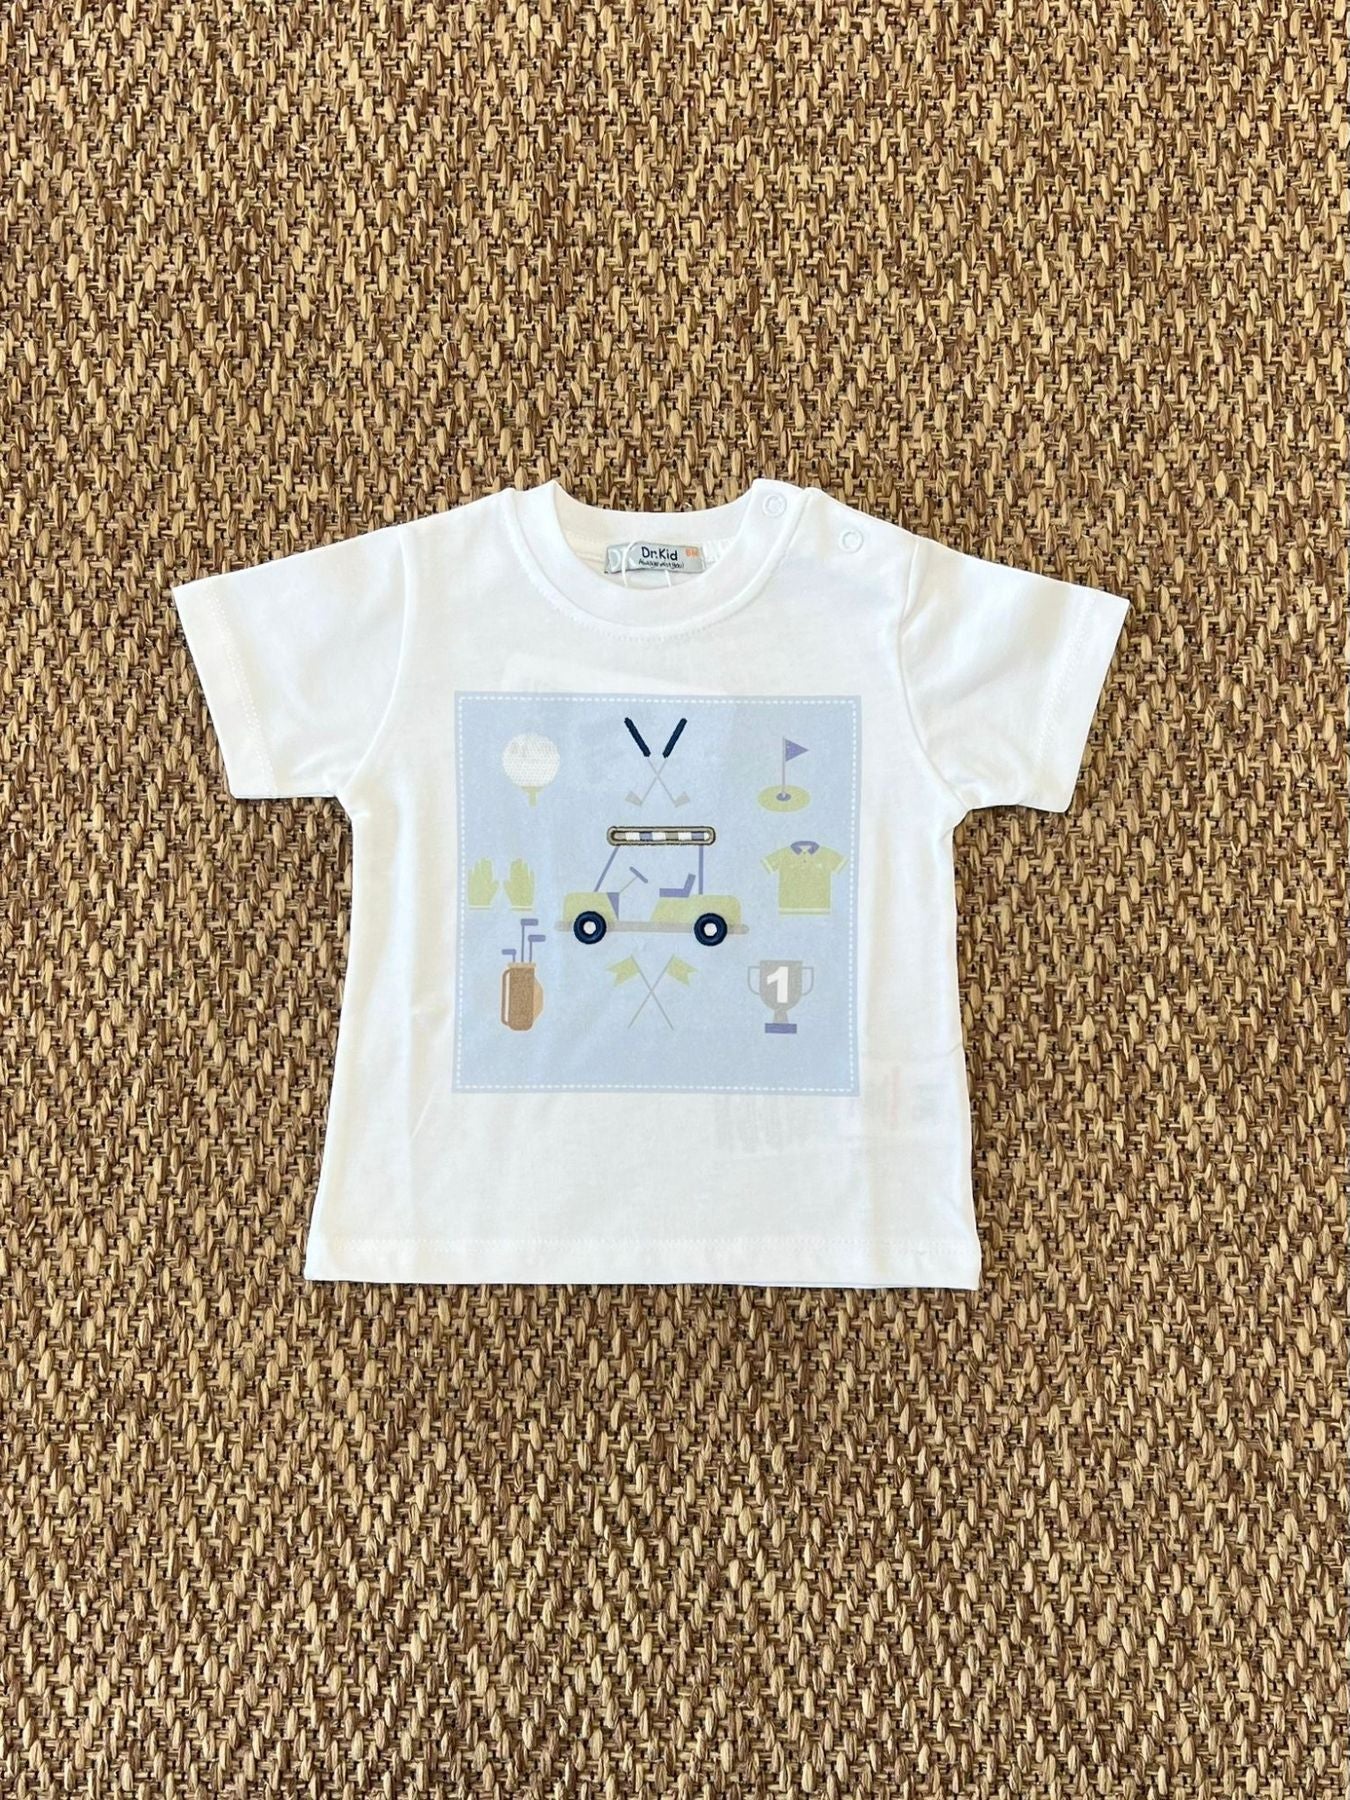 T-shirt - DK526/PV24